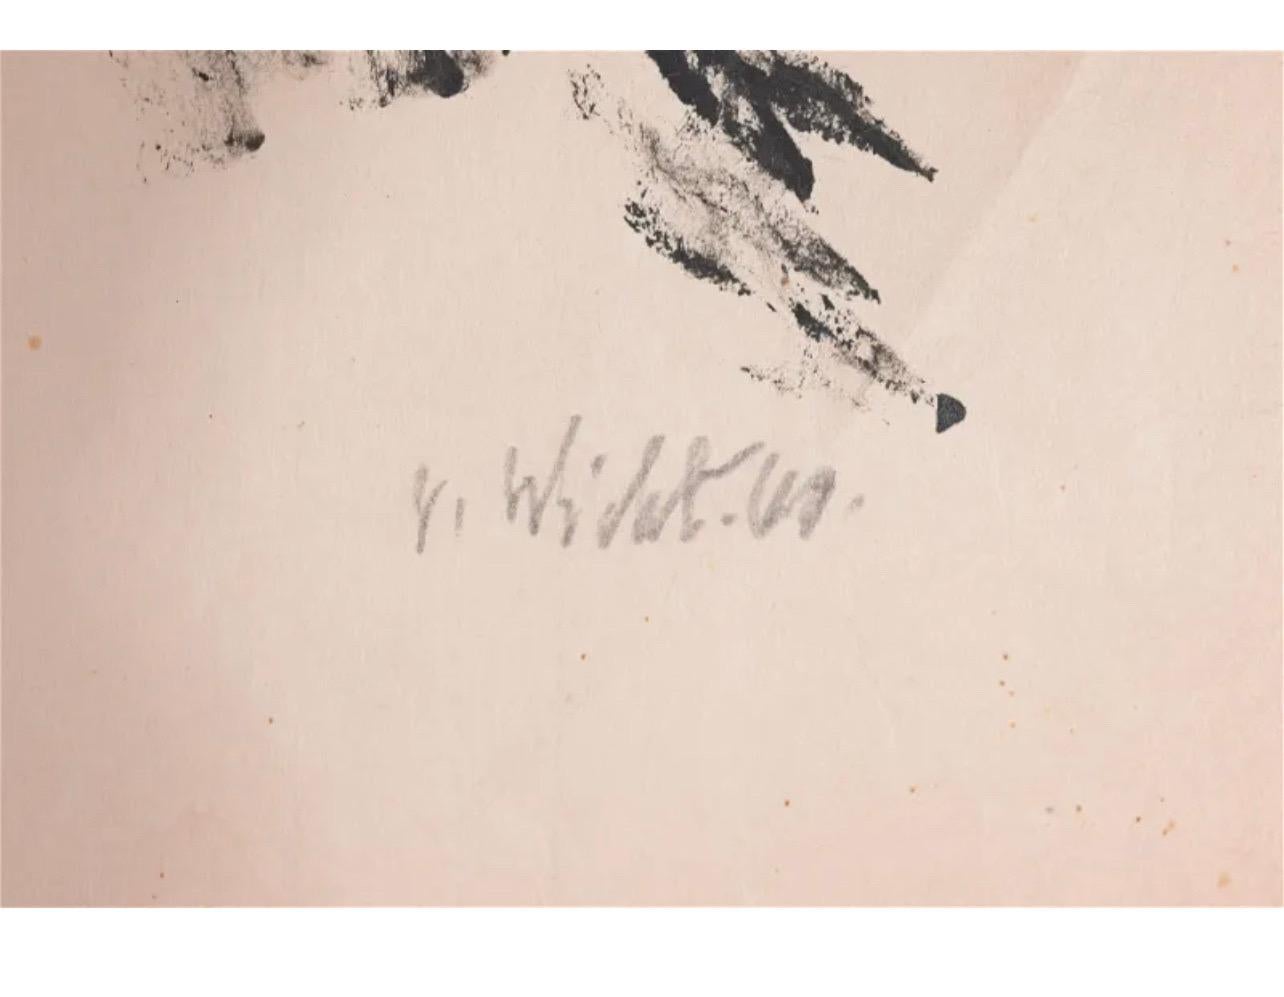 John von Wicht (Amerikaner, 1888-1970) 
Öl auf japanischem Reispapier. Handsigniert und datiert mit Bleistift unten rechts. 
Blattgröße: 21 x 29,25 Zoll. 

Johannes Von Wicht wurde am 3. Februar 1888 in Holstein, Deutschland, geboren. Seine Mutter